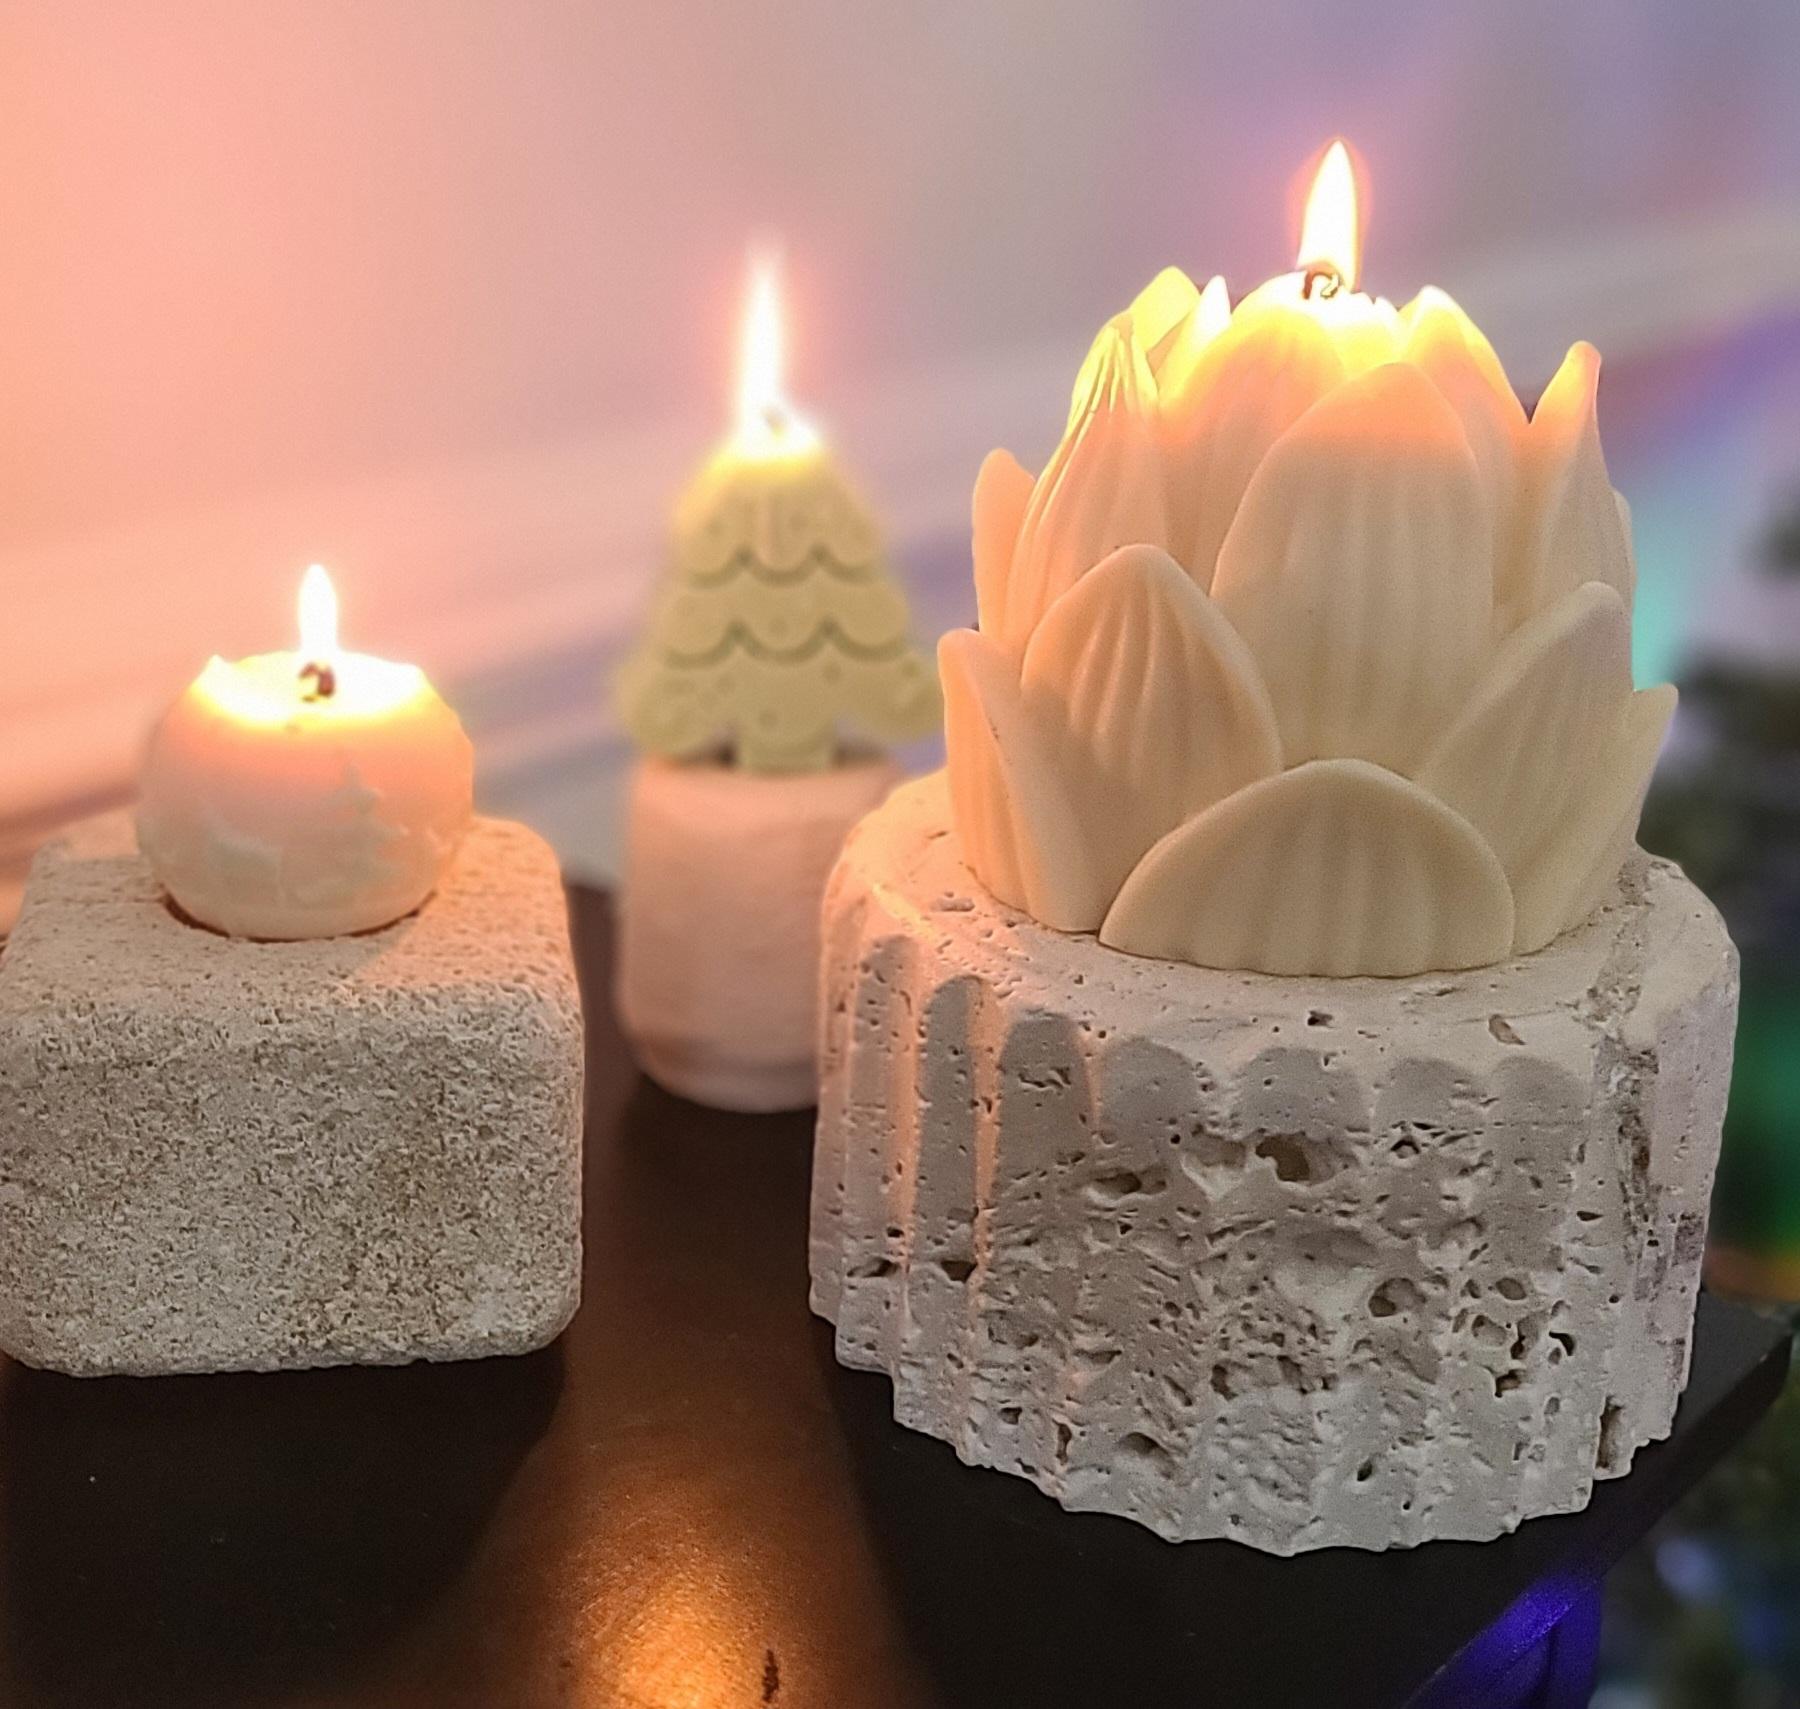 Werten Sie Ihren Raum mit unserem exquisiten Travertin-Kerzenständer auf. Aus hochwertigem Travertin gefertigt, ist jedes Stück ein Unikat mit natürlichen Variationen in Farbe und Textur. Die zeitlose Eleganz dieses Kerzenhalters verleiht jedem Raum